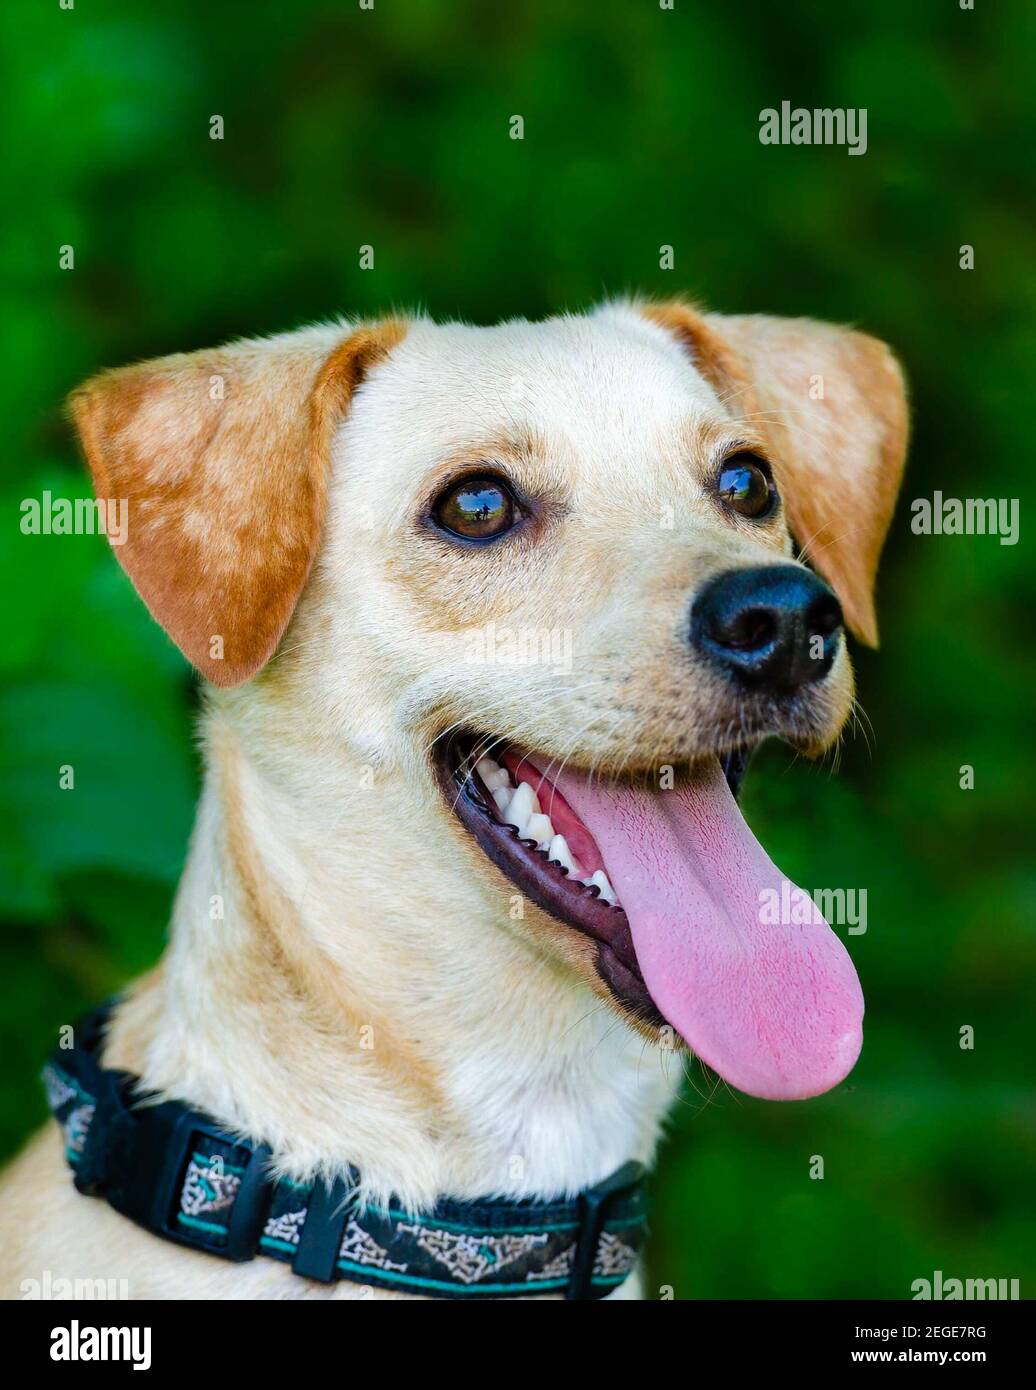 Une image verticale de gros plan d'UN chien avec sa langue Et un regard heureux sur son visage Banque D'Images